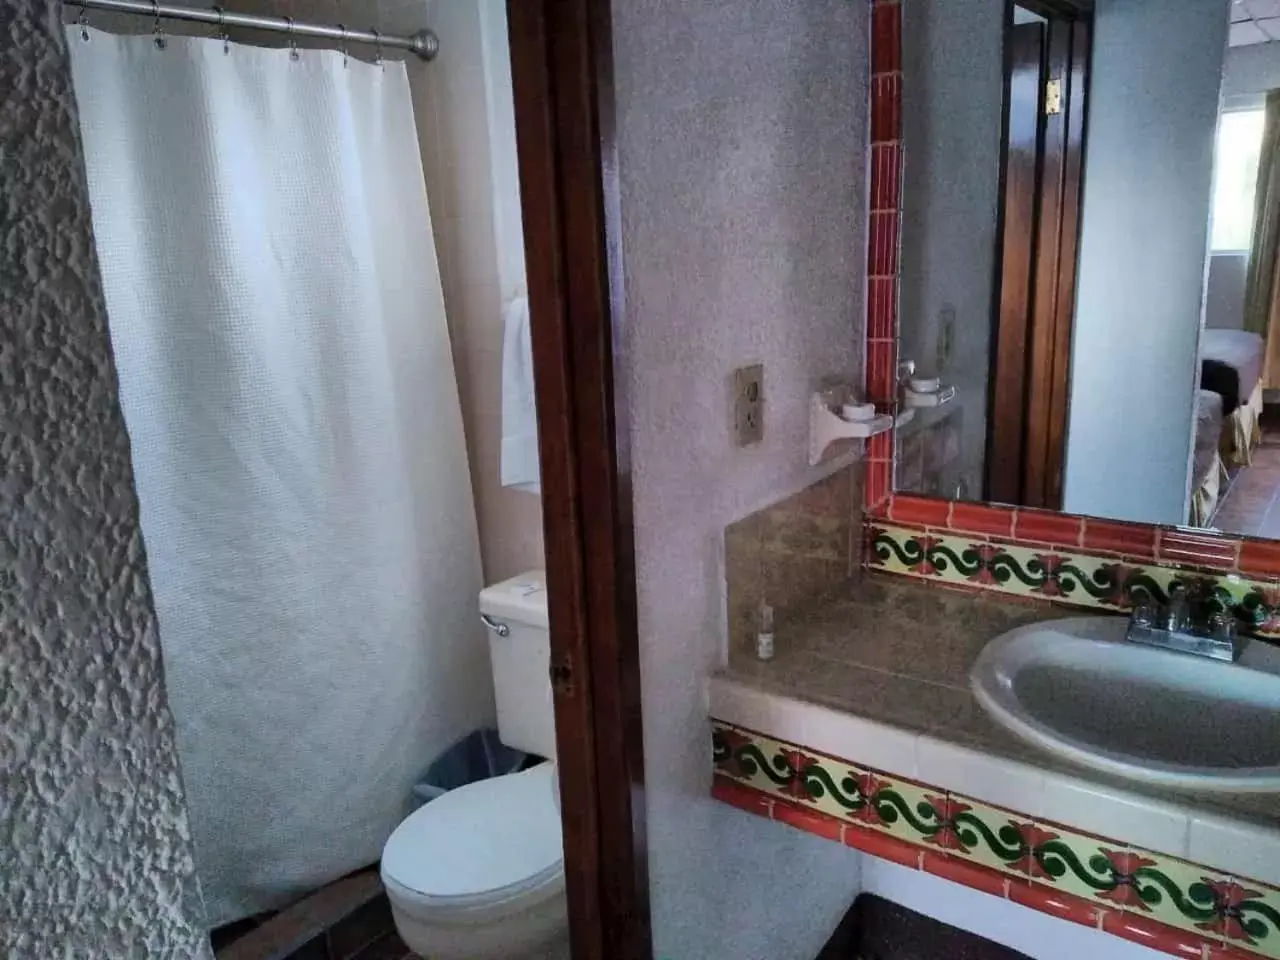 Bathroom in Hotel Las Palmas